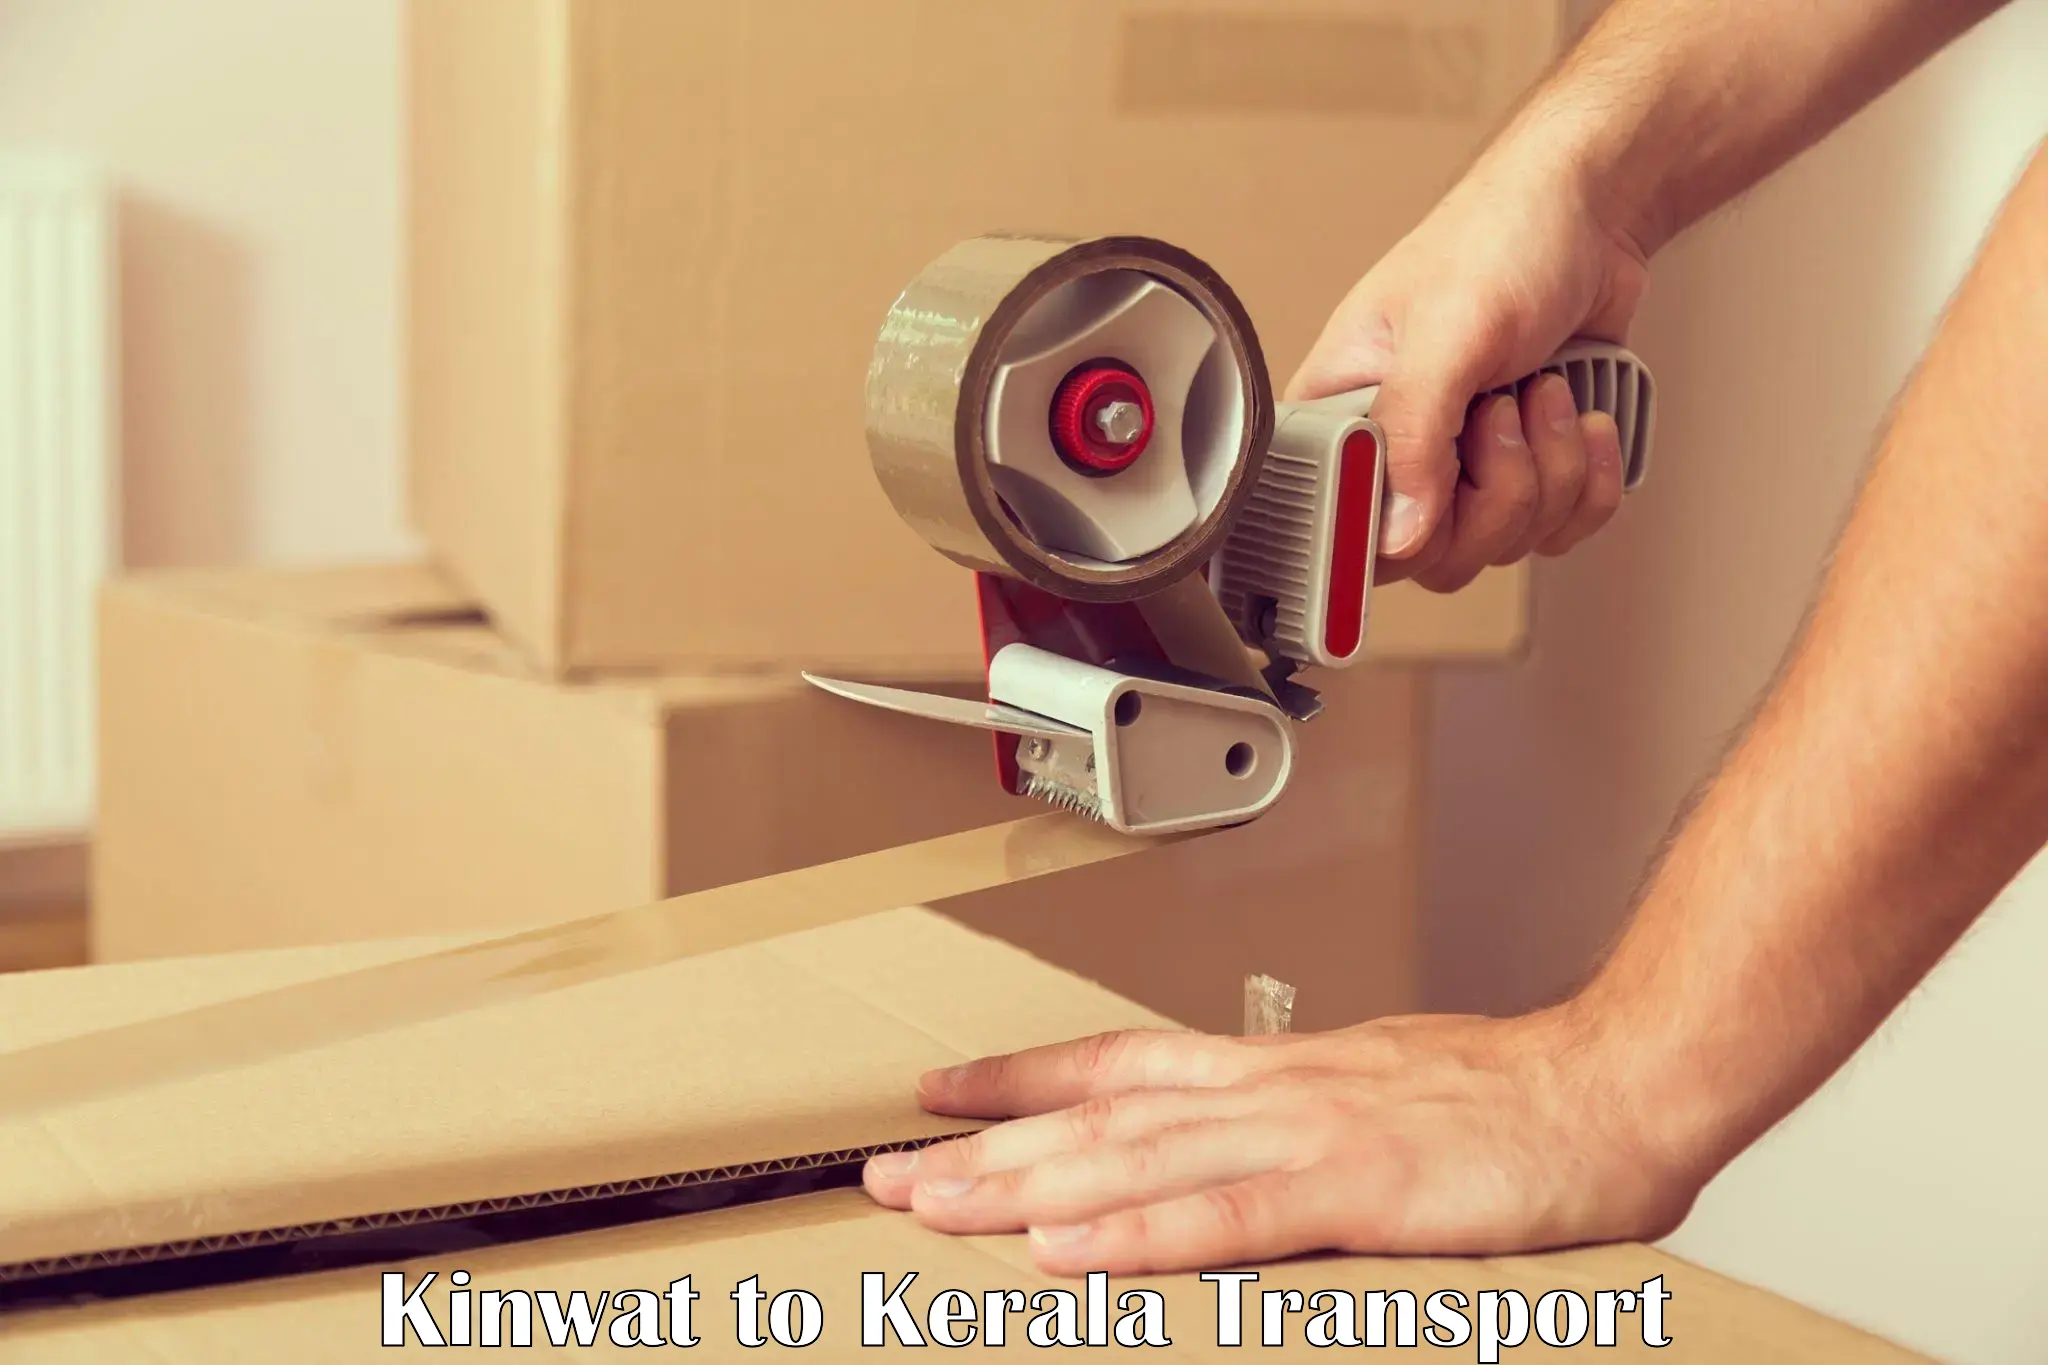 Shipping partner Kinwat to Palai